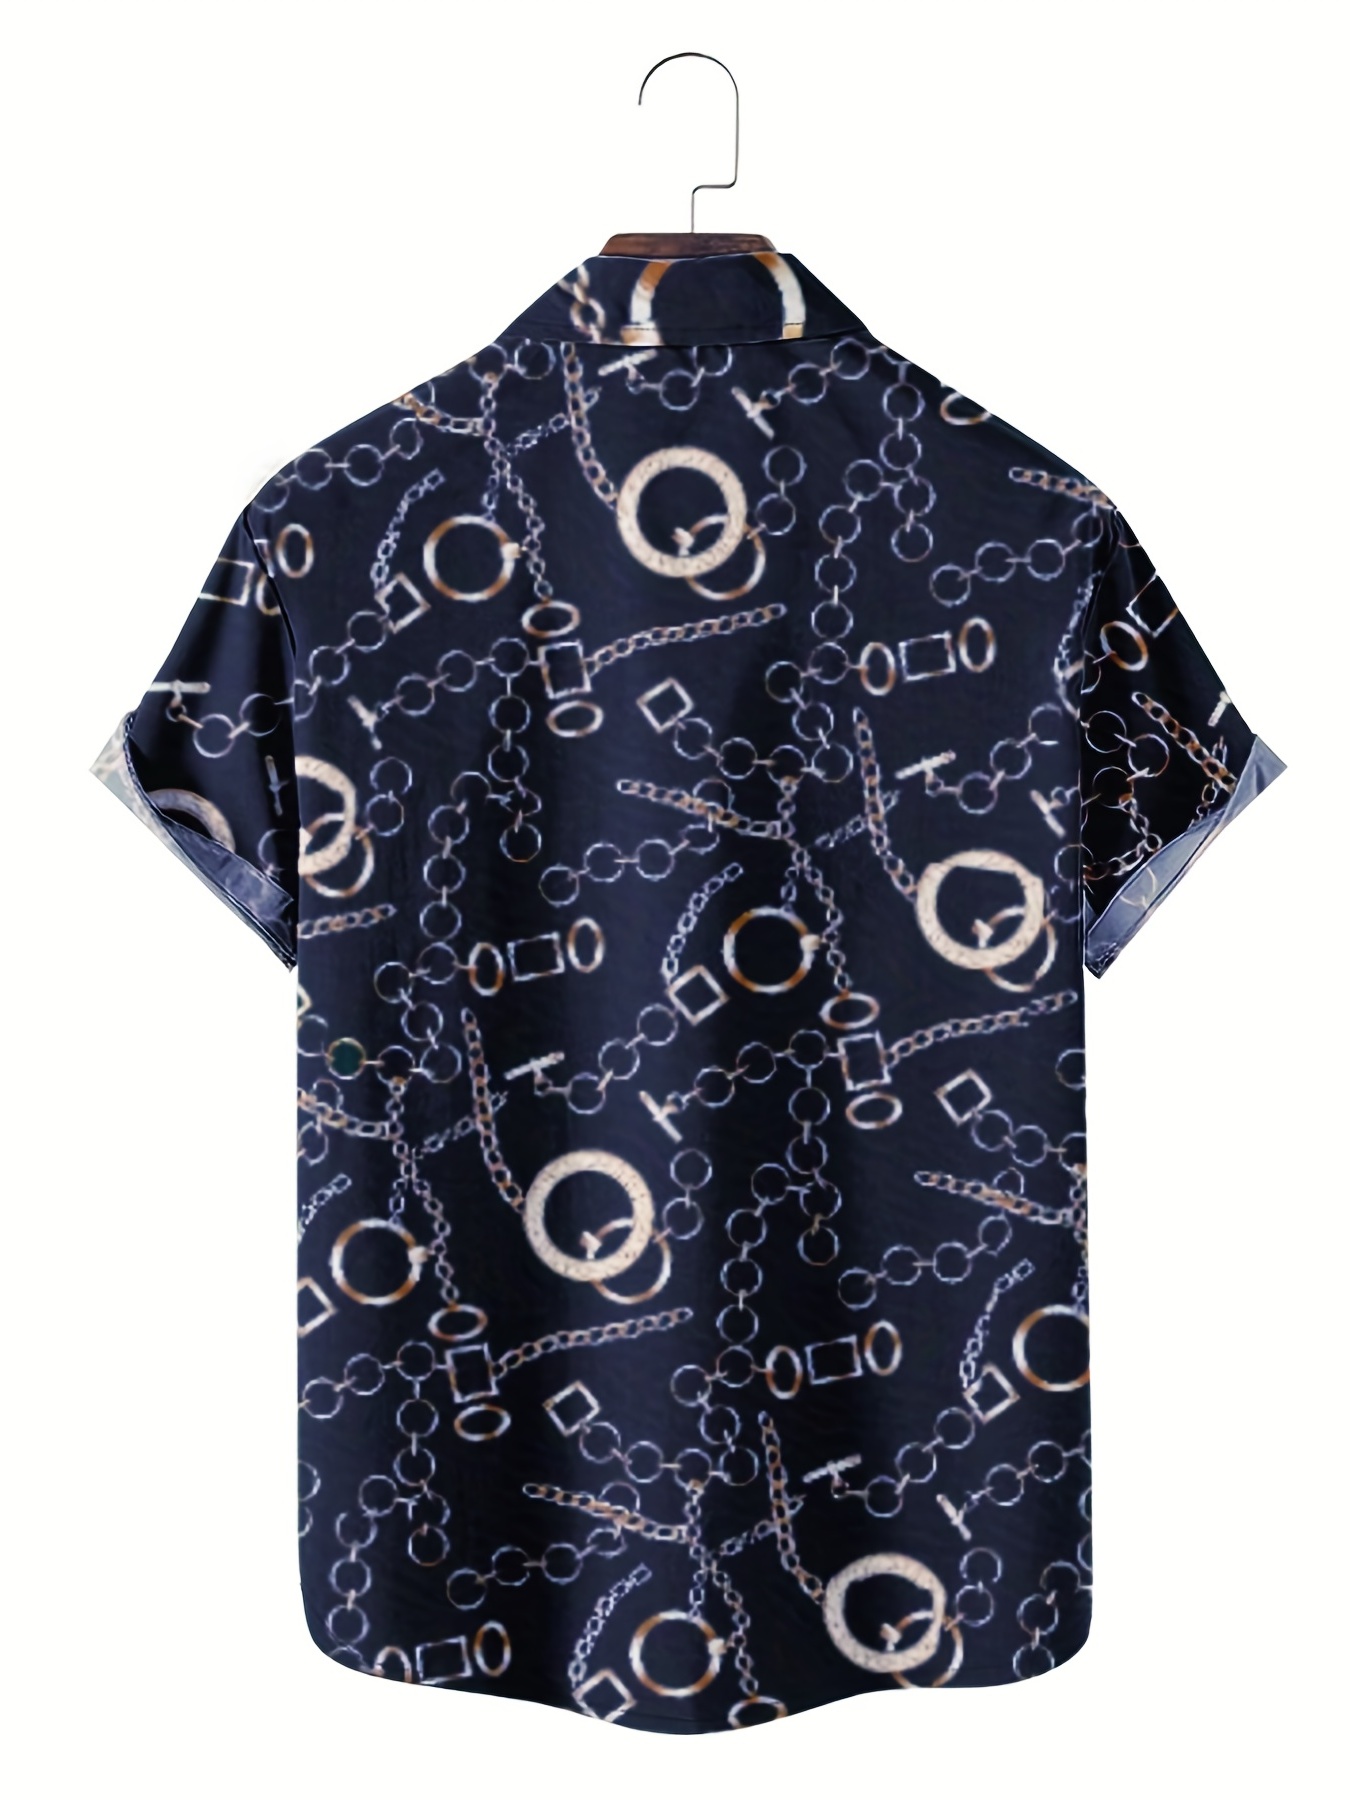 Stylish Golden Chain Print Men's Casual Short Sleeve Shirt, Men's Shirt For  Summer Vacation Resort, Tops For Men, Gift For Men - Temu